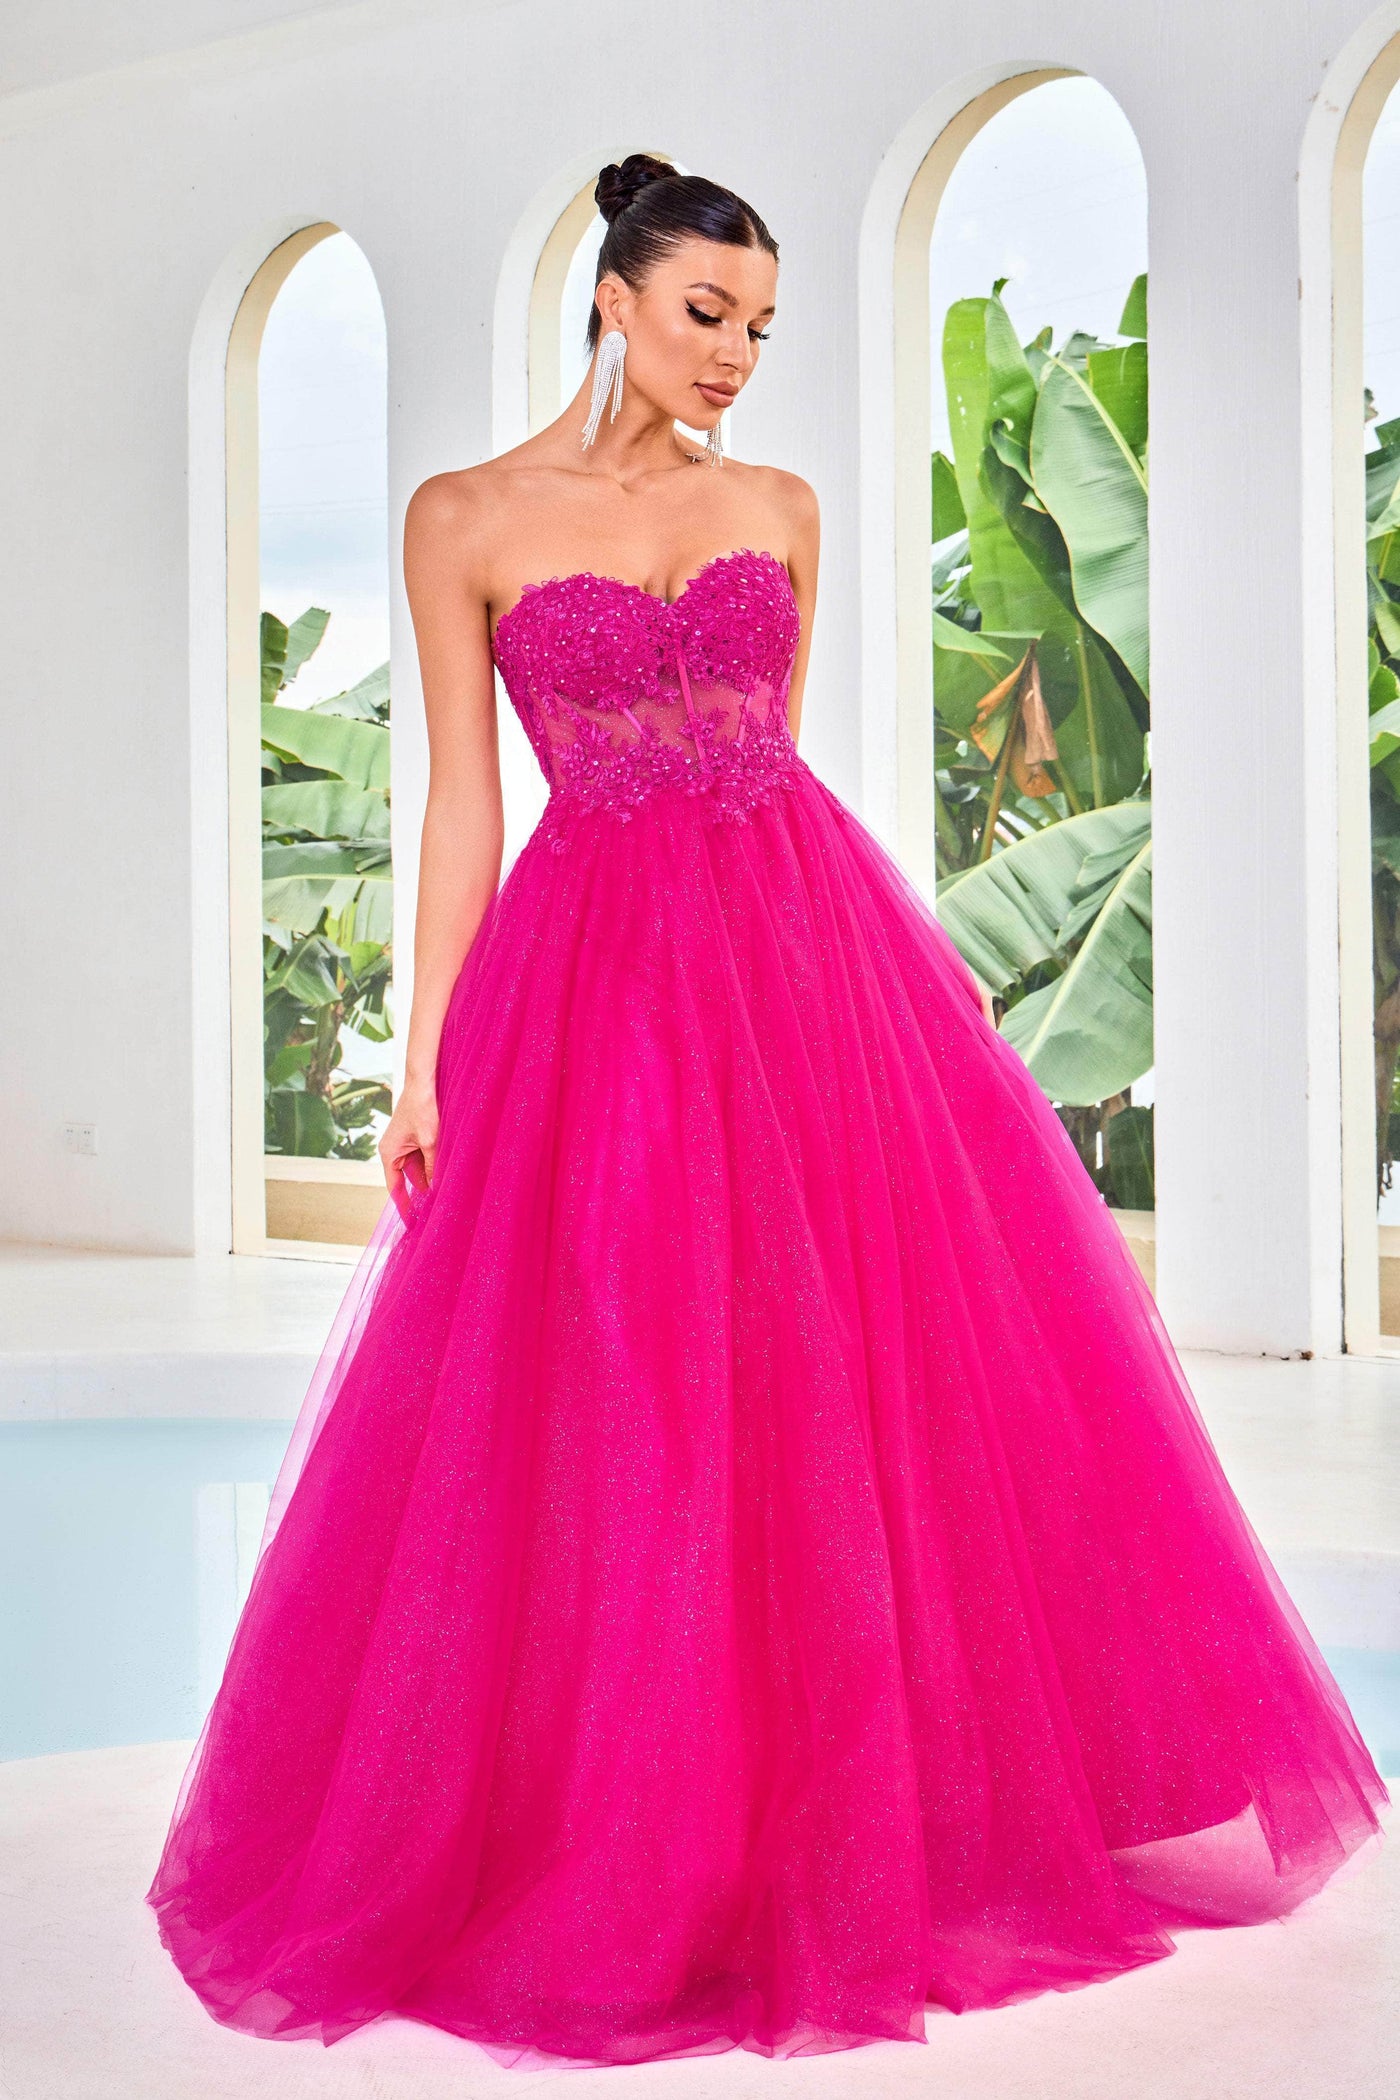 J'Adore Dresses J24016 - Glitter A-Line Prom Dress Special Occasion Dresses